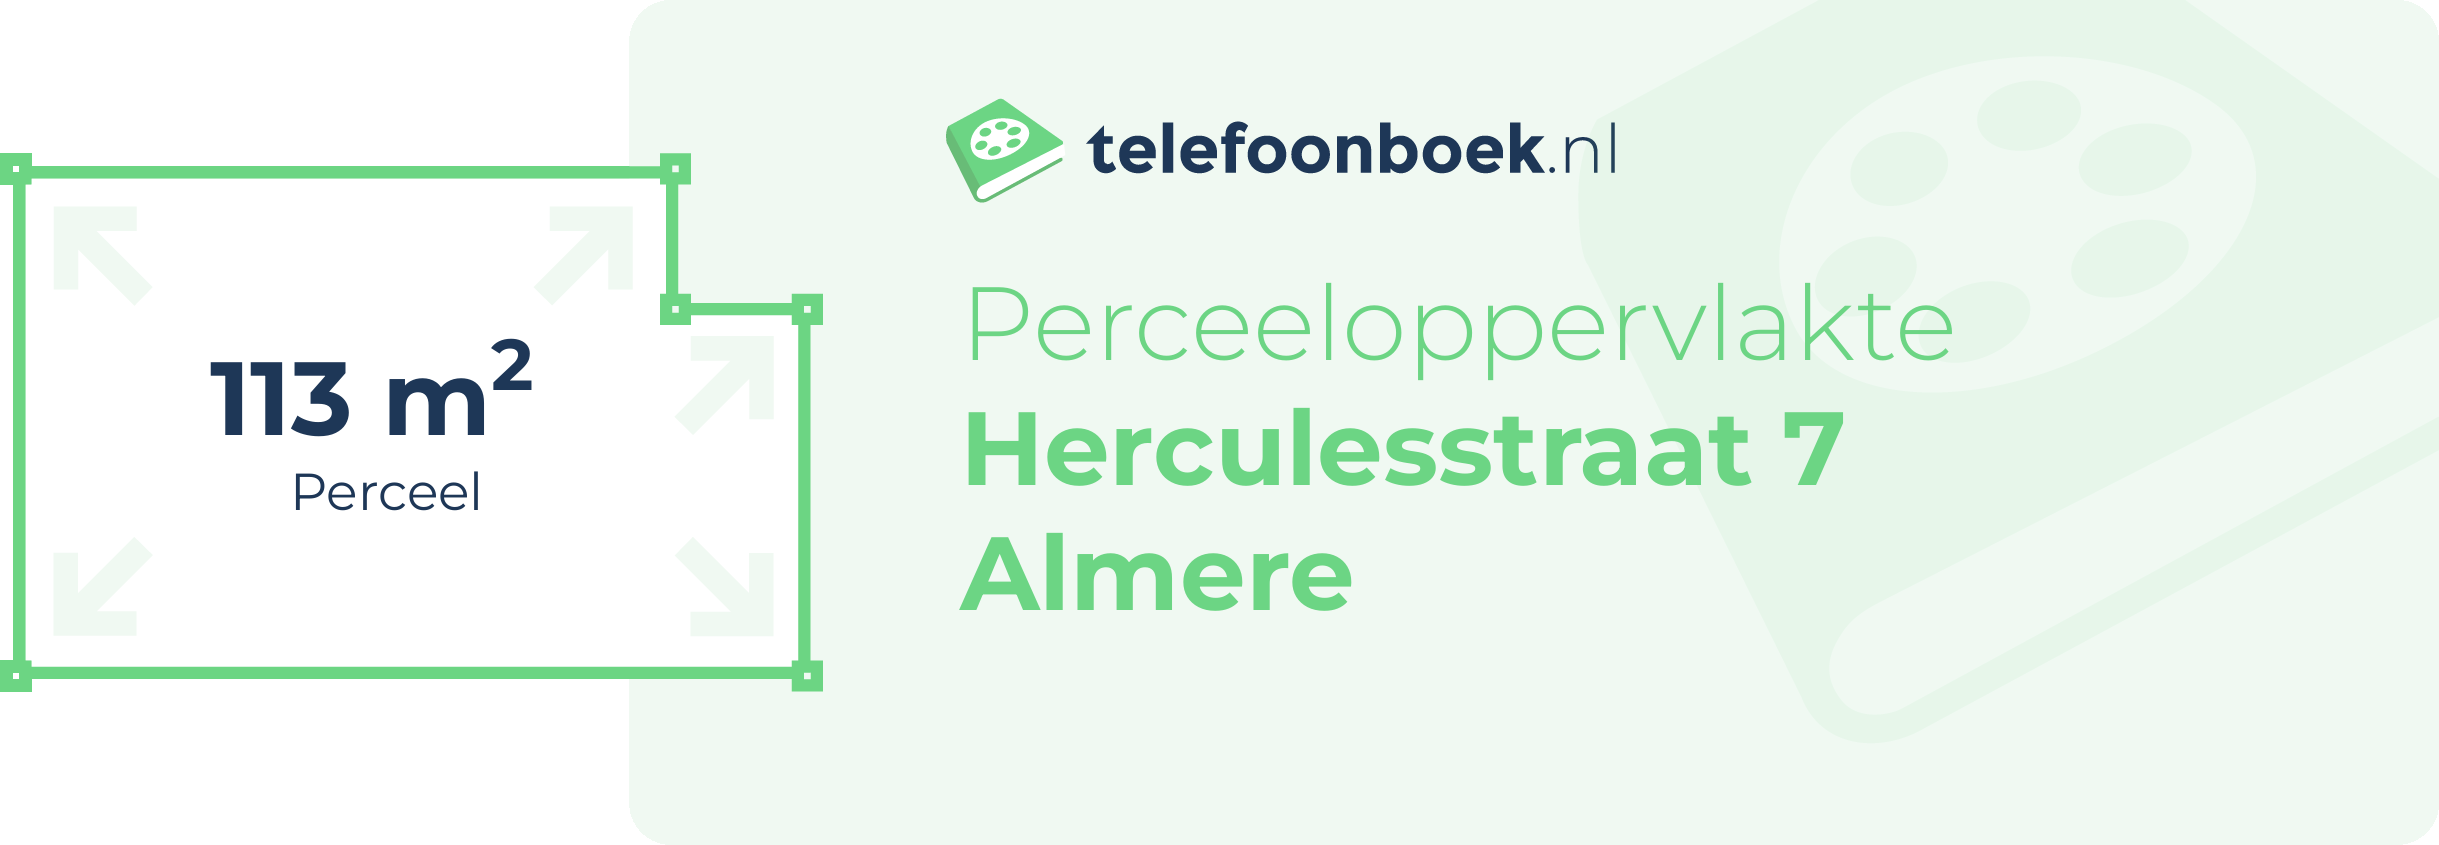 Perceeloppervlakte Herculesstraat 7 Almere